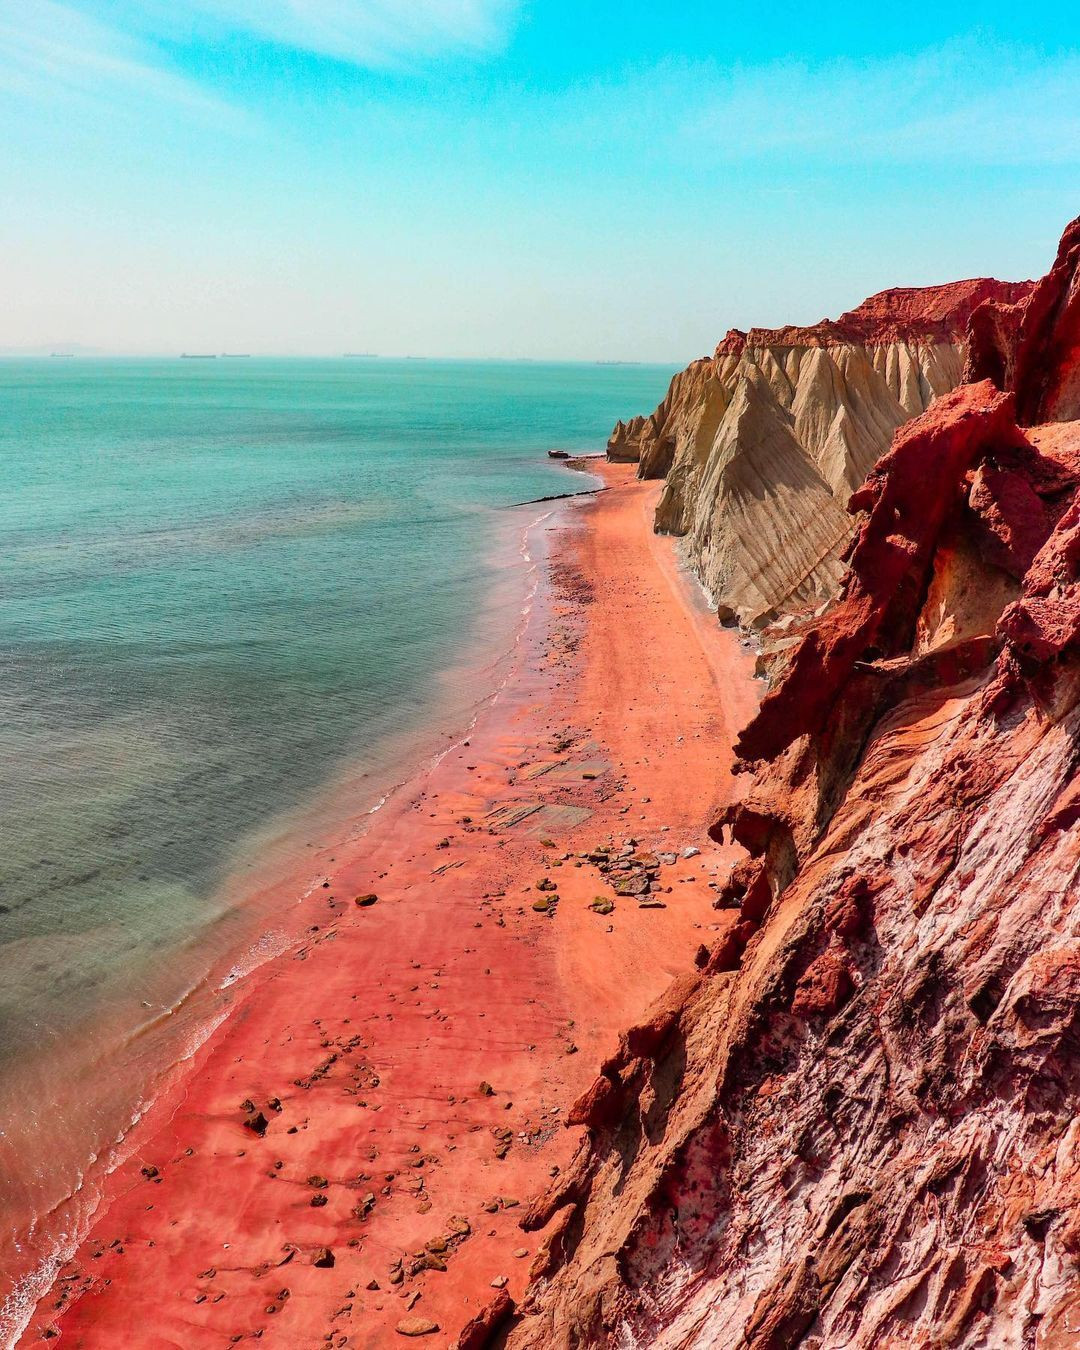 Hòn đảo độc nhất hành tinh với bờ biển đỏ như máu, cát có thể chế thành món ăn - 4